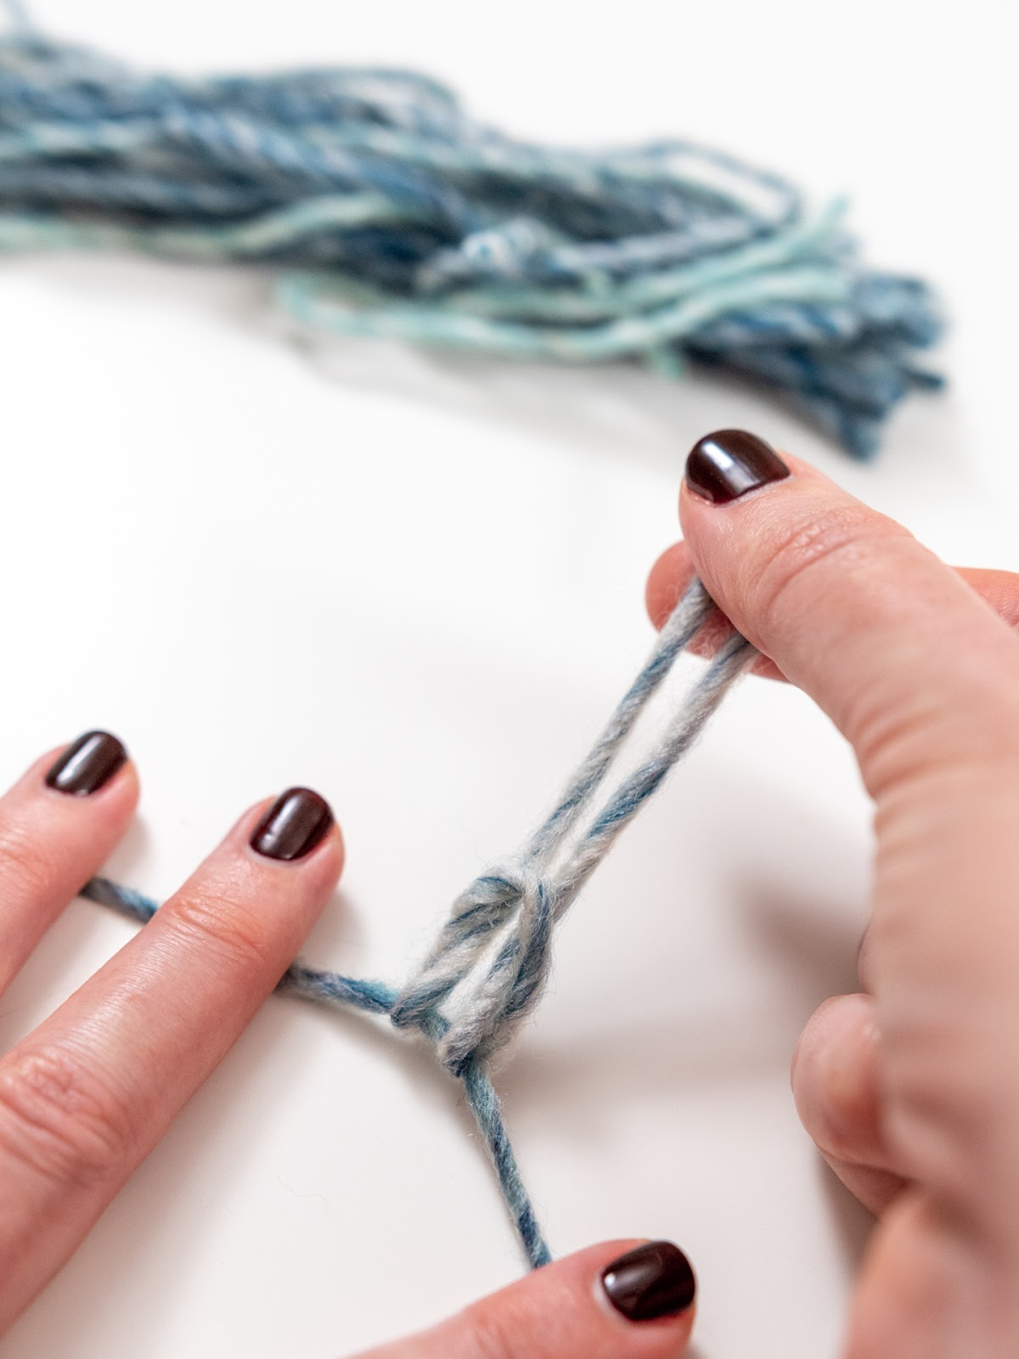 pull yarn ends through loop